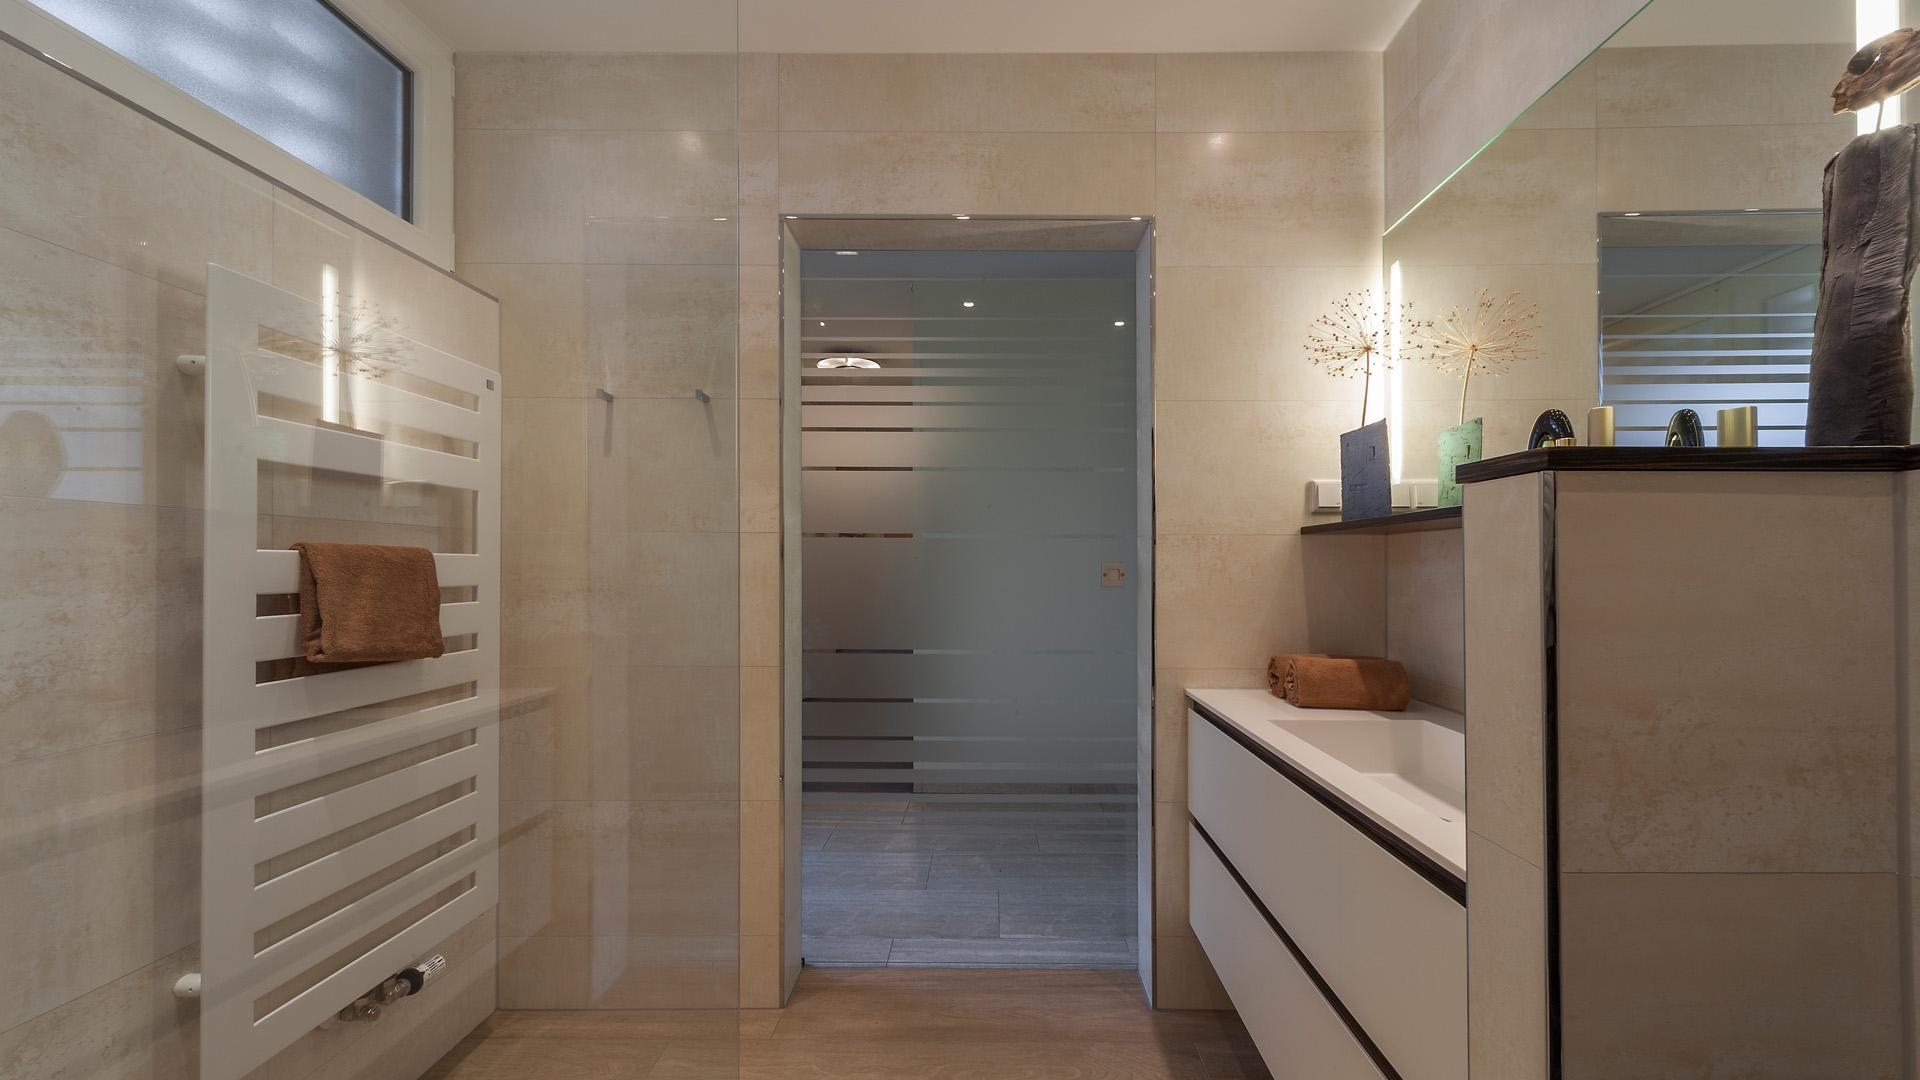 -Anzeige- #bestebadstudios #badezimmer #bad #waschbecken #badmöbel #modernesbadezimmer #badsanierung